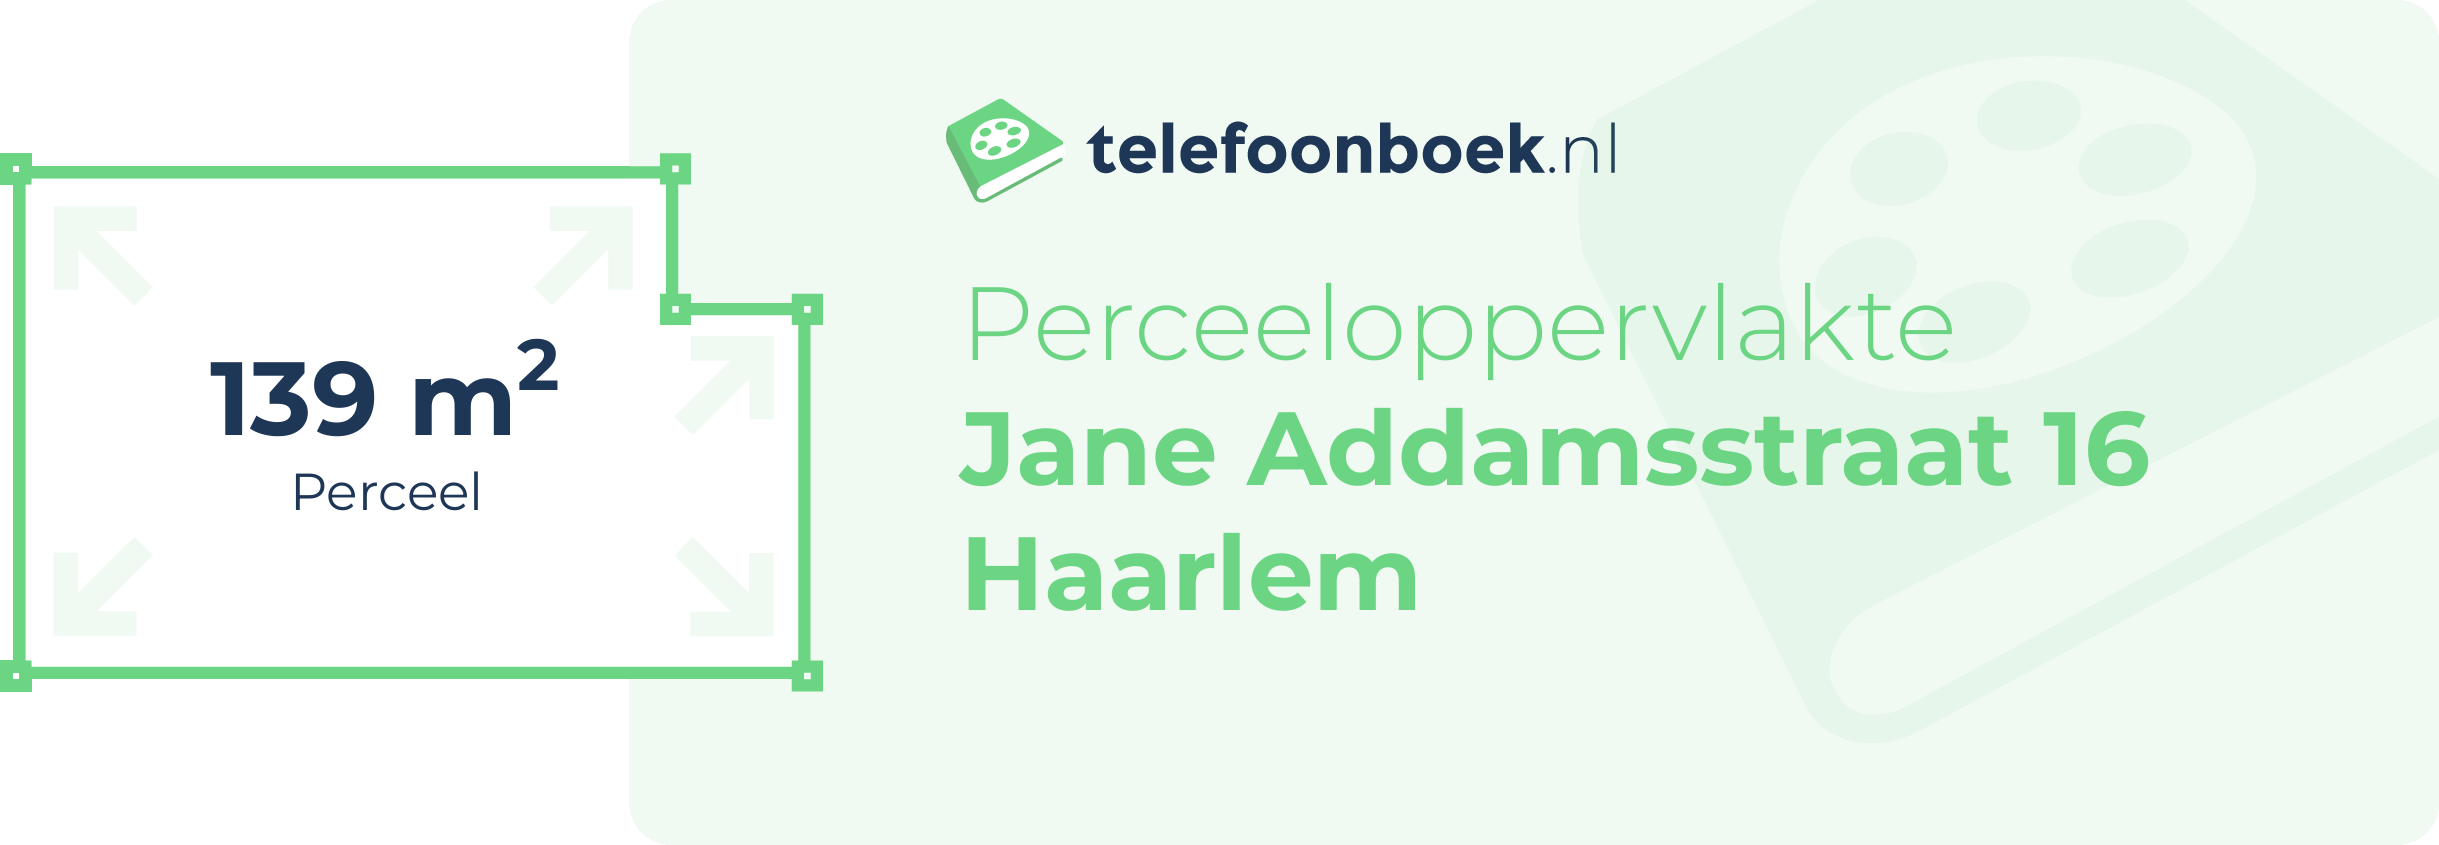 Perceeloppervlakte Jane Addamsstraat 16 Haarlem